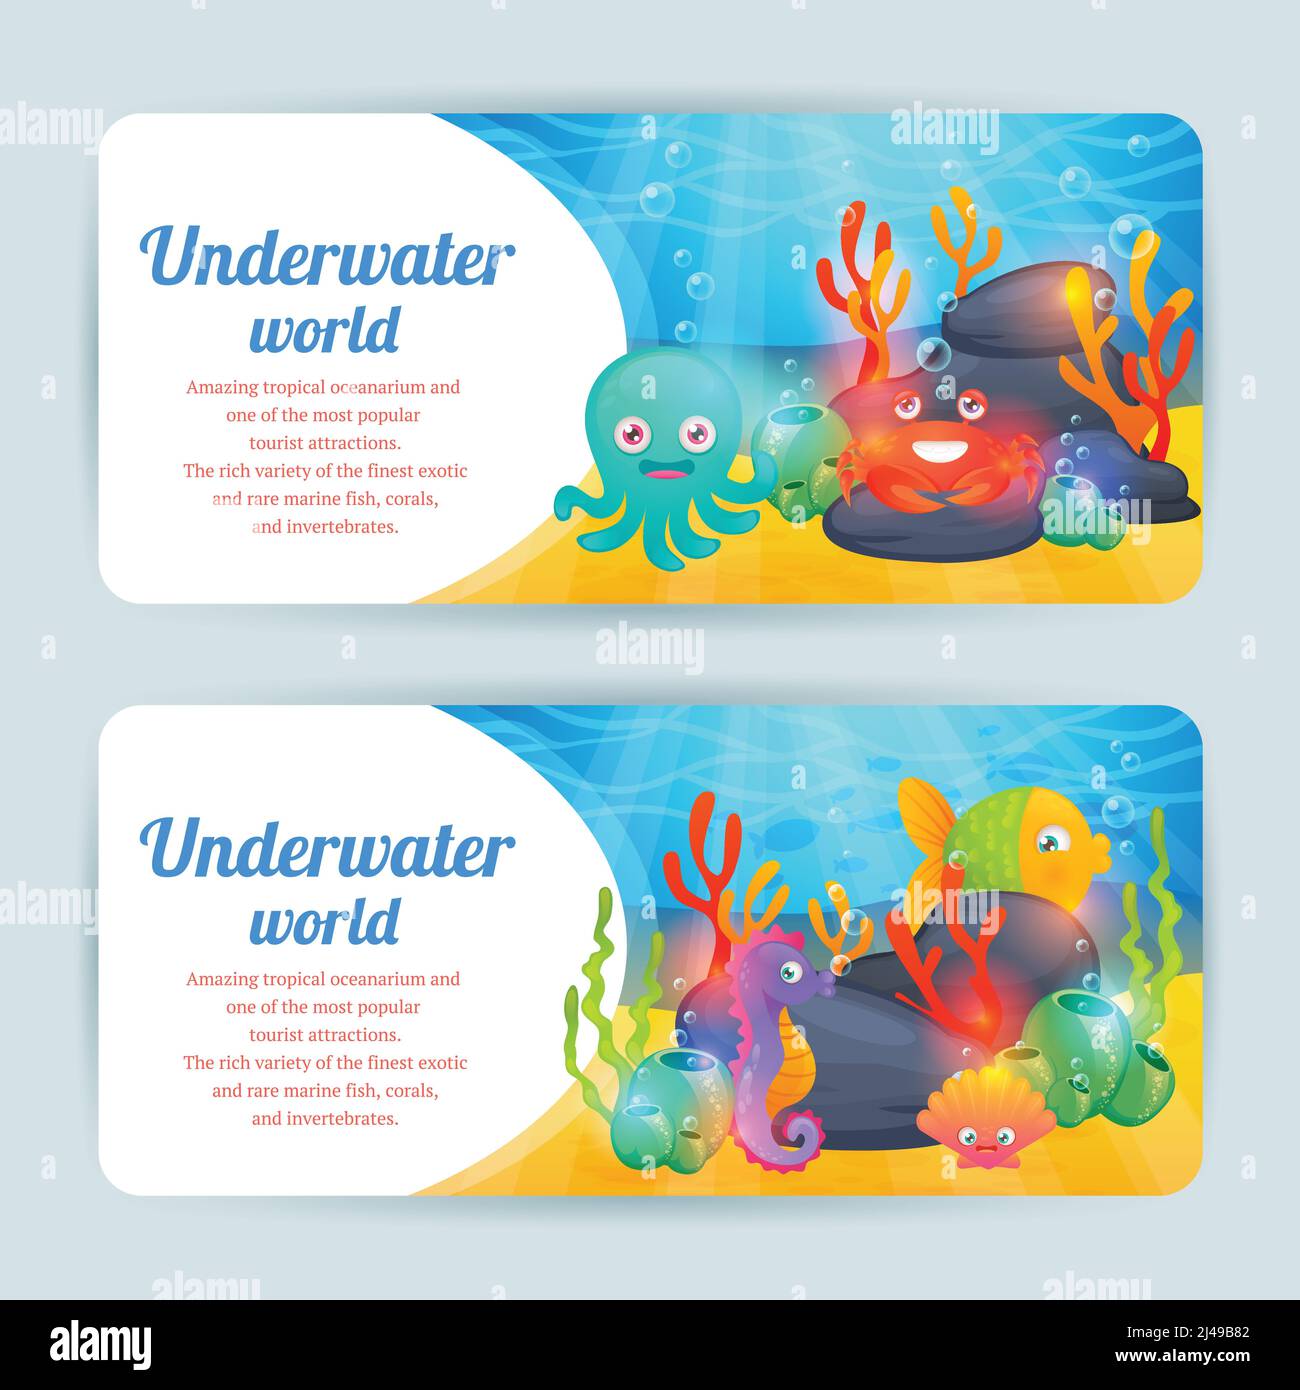 Unterwasser tropische exotische Meerestiere horizontale Banner mit Krabben gesetzt Korallen und Oktopus abstrakt isoliert Vektor-Illustration Stock Vektor